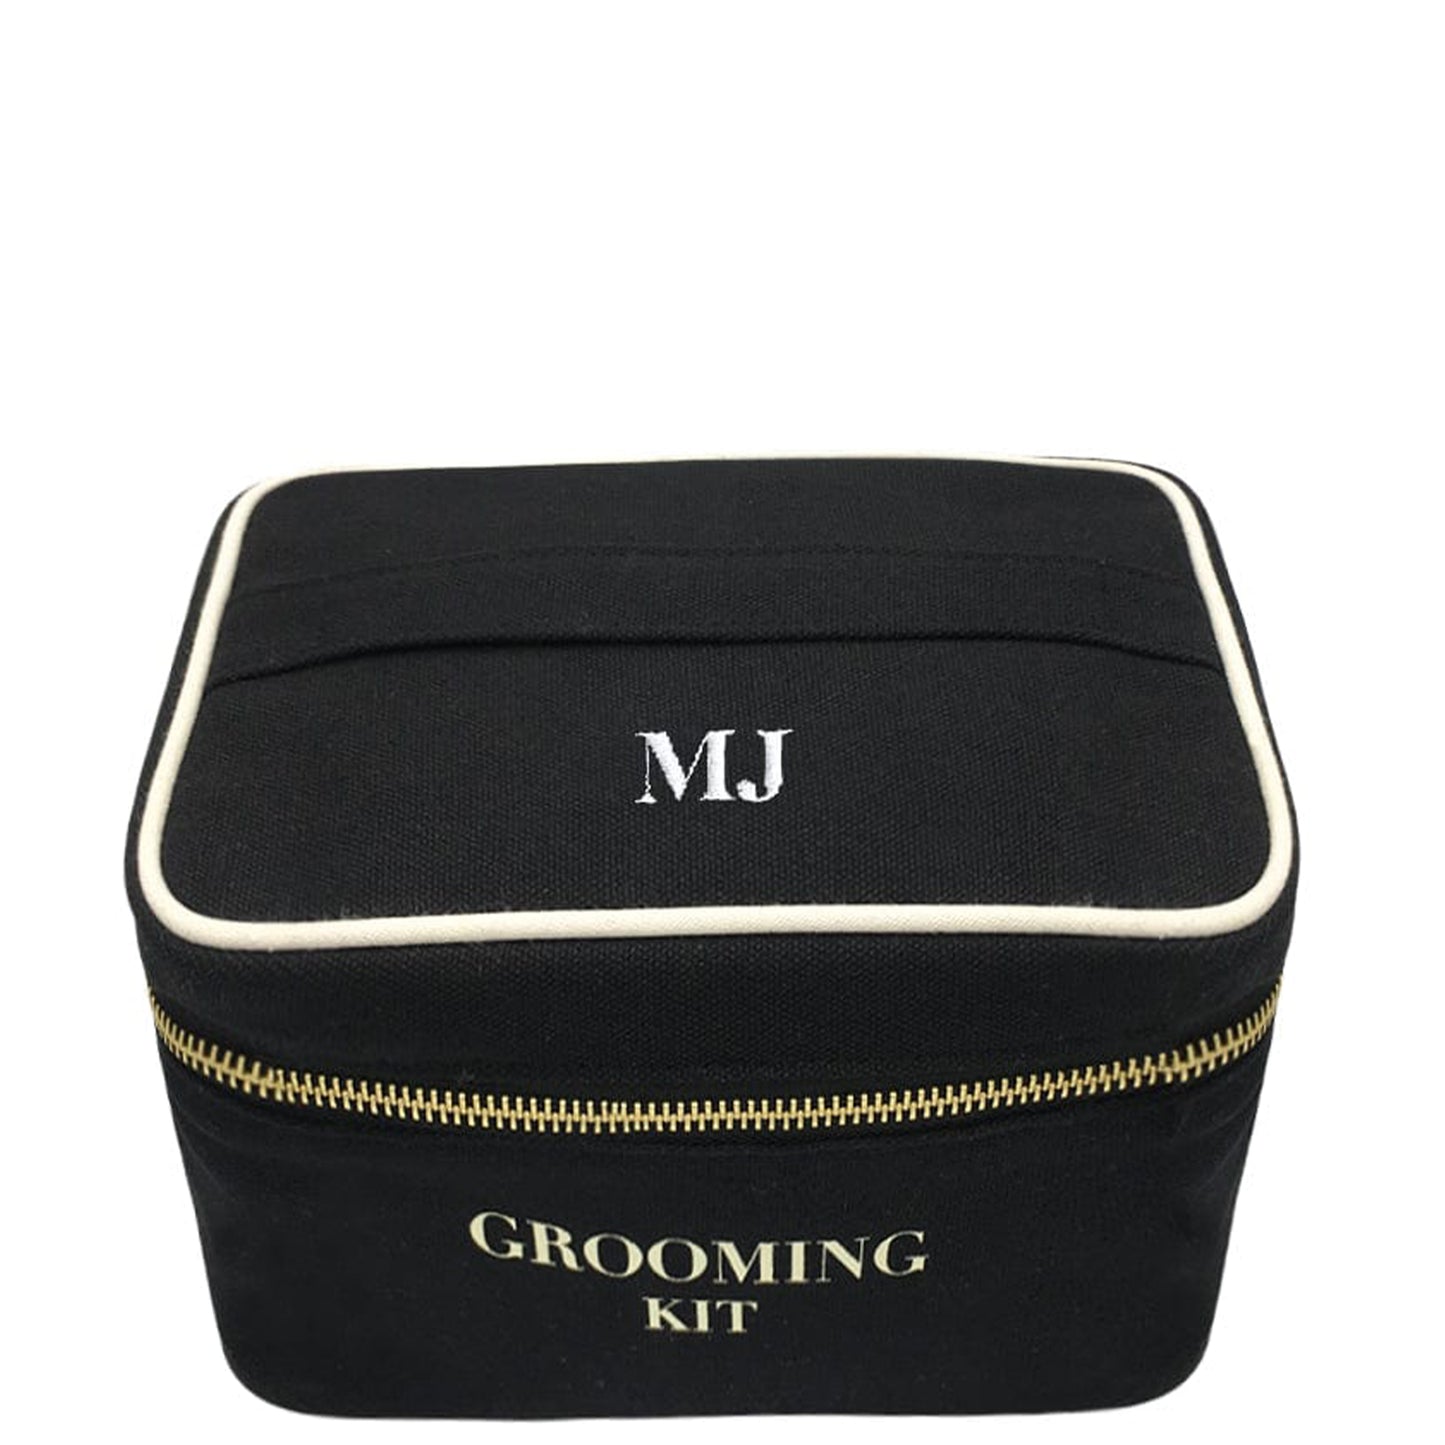 
                                      
                                        Trousse de toilette "Grooming Kit", Personnalisable Noire - Bag-all France
                                      
                                    